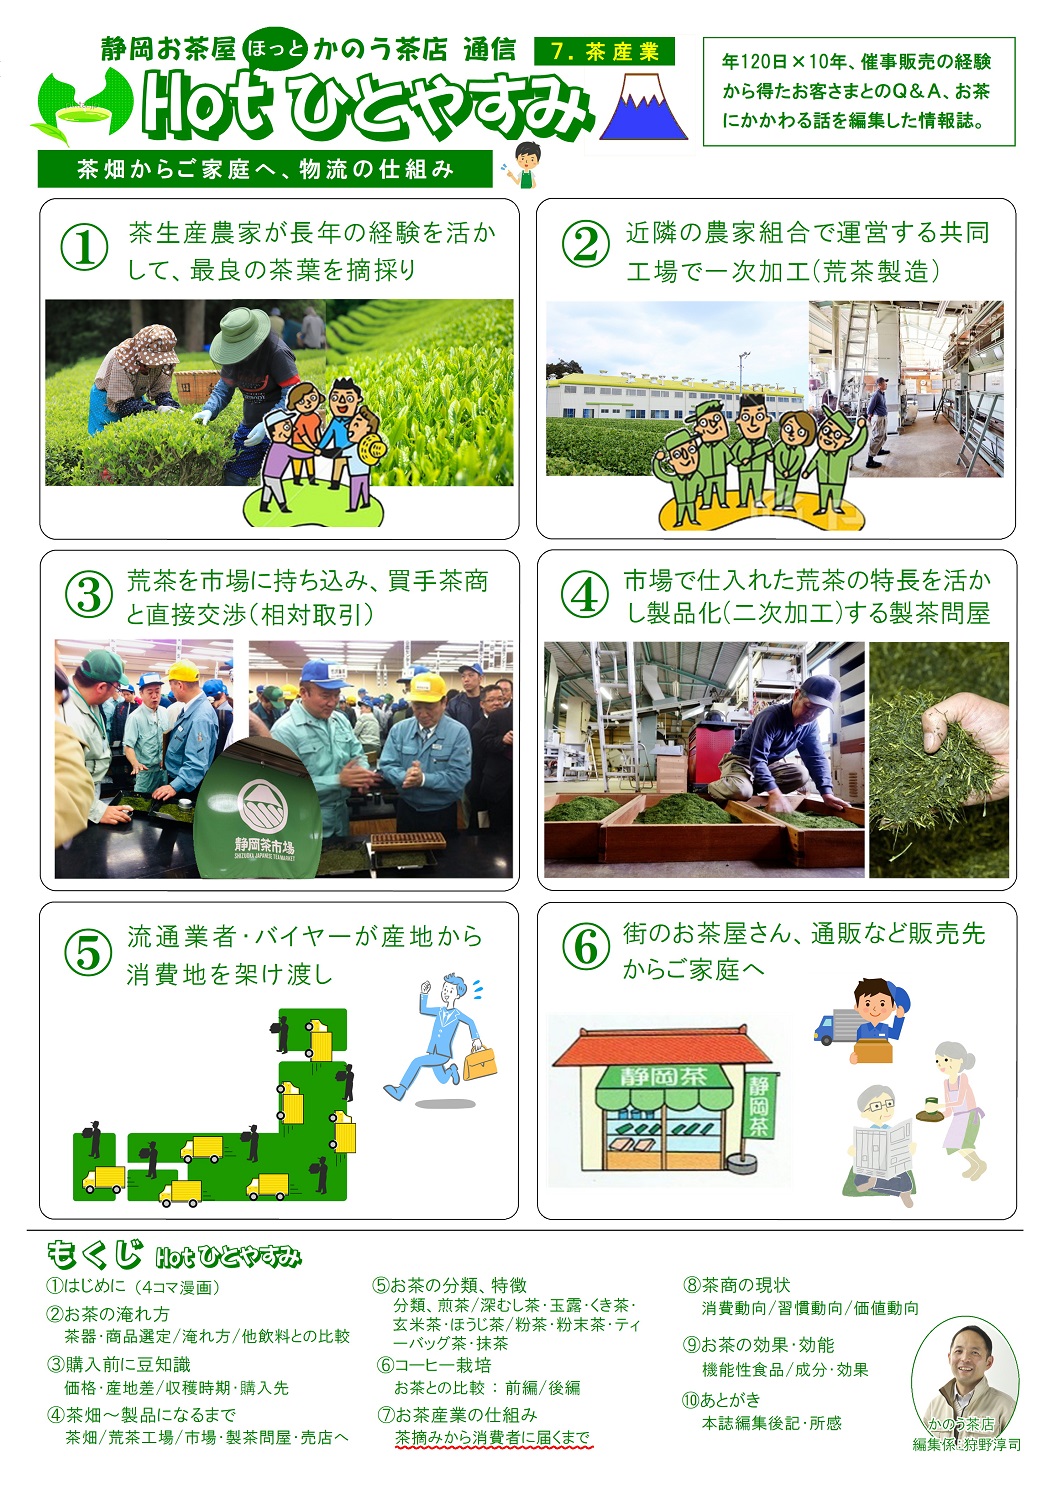 (7)茶産業(茶摘み～消費者へ)